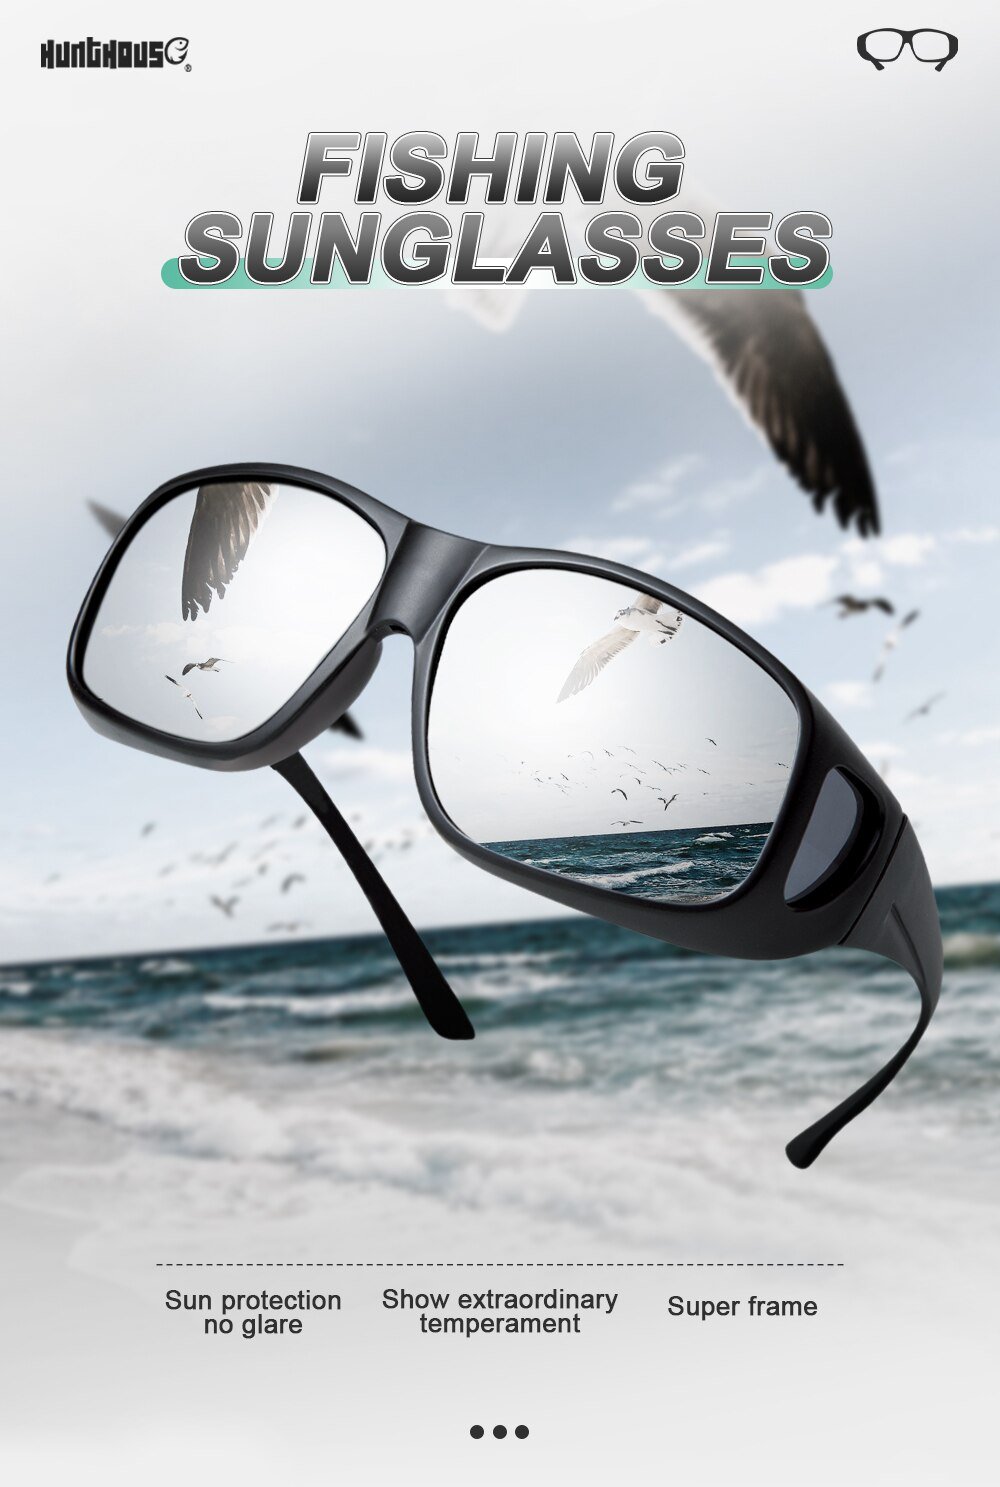 Hunthouse-gafas polarizadas de pesca para hombre y mujer, lentes de sol para deportes al aire libre, acampada, senderismo, conducción, ciclismo, tienda oficial